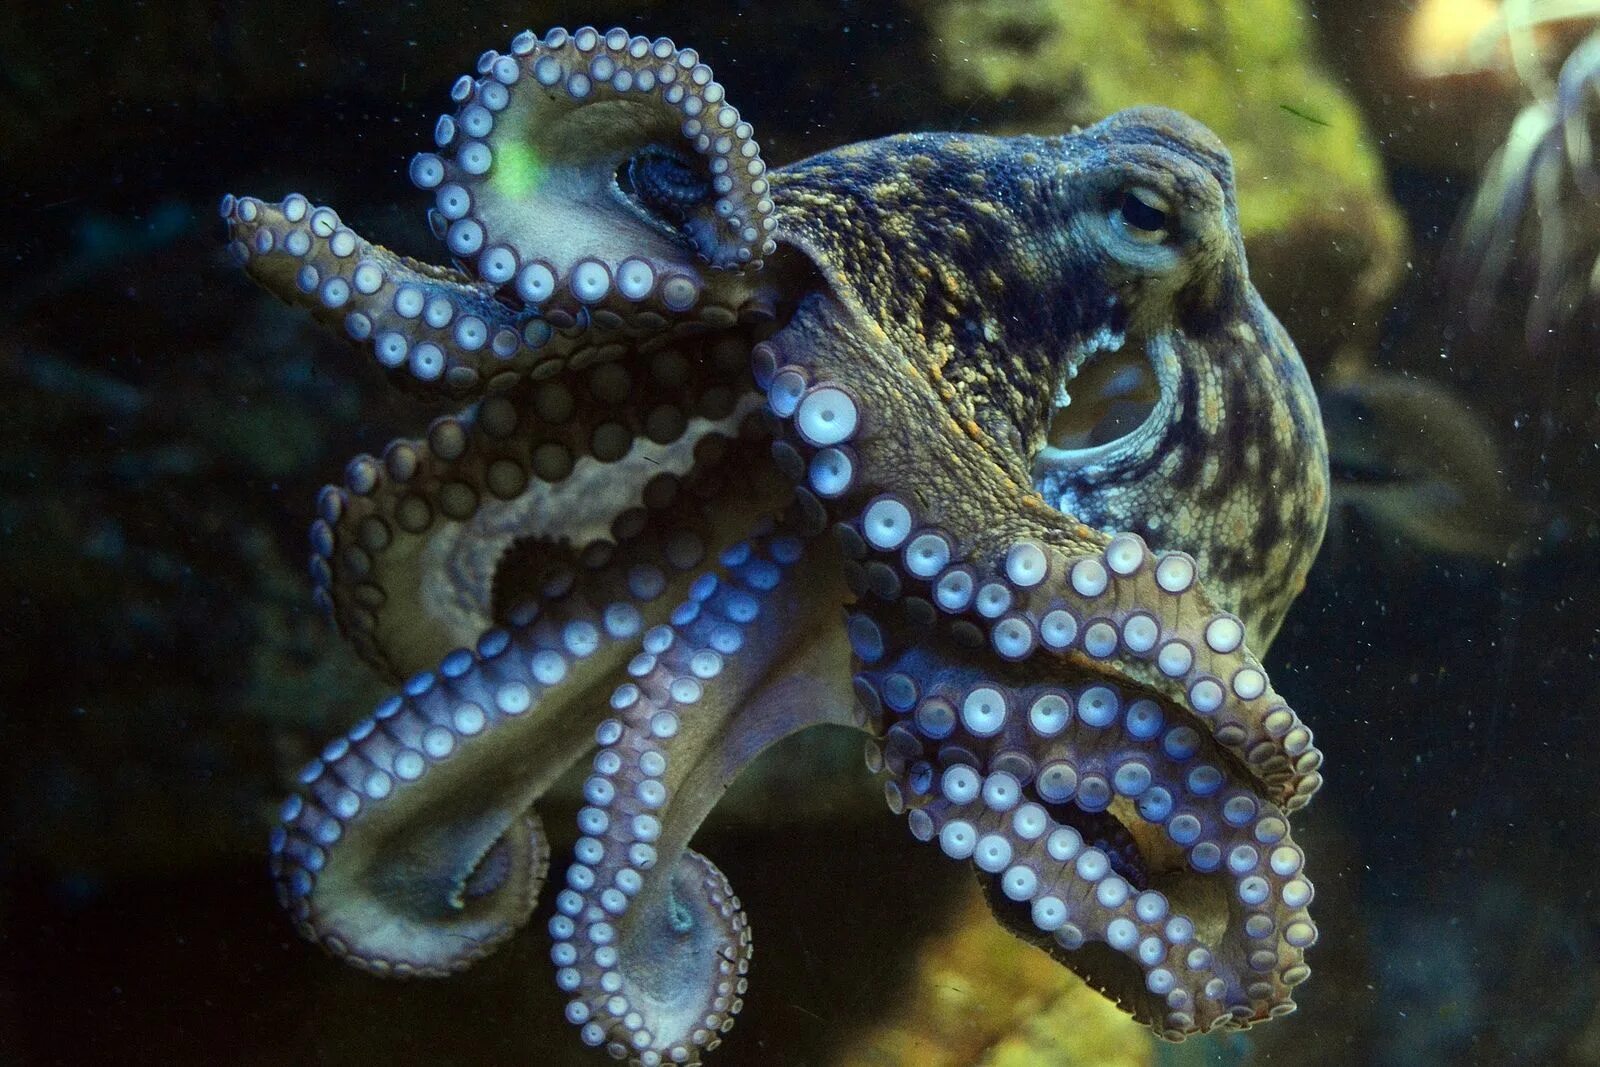 Осьминог Octopus vulgaris. Синекольчатый осьминог. Октопус вульгарис. Голубой кольчатый осьминог. Что такое осьминог